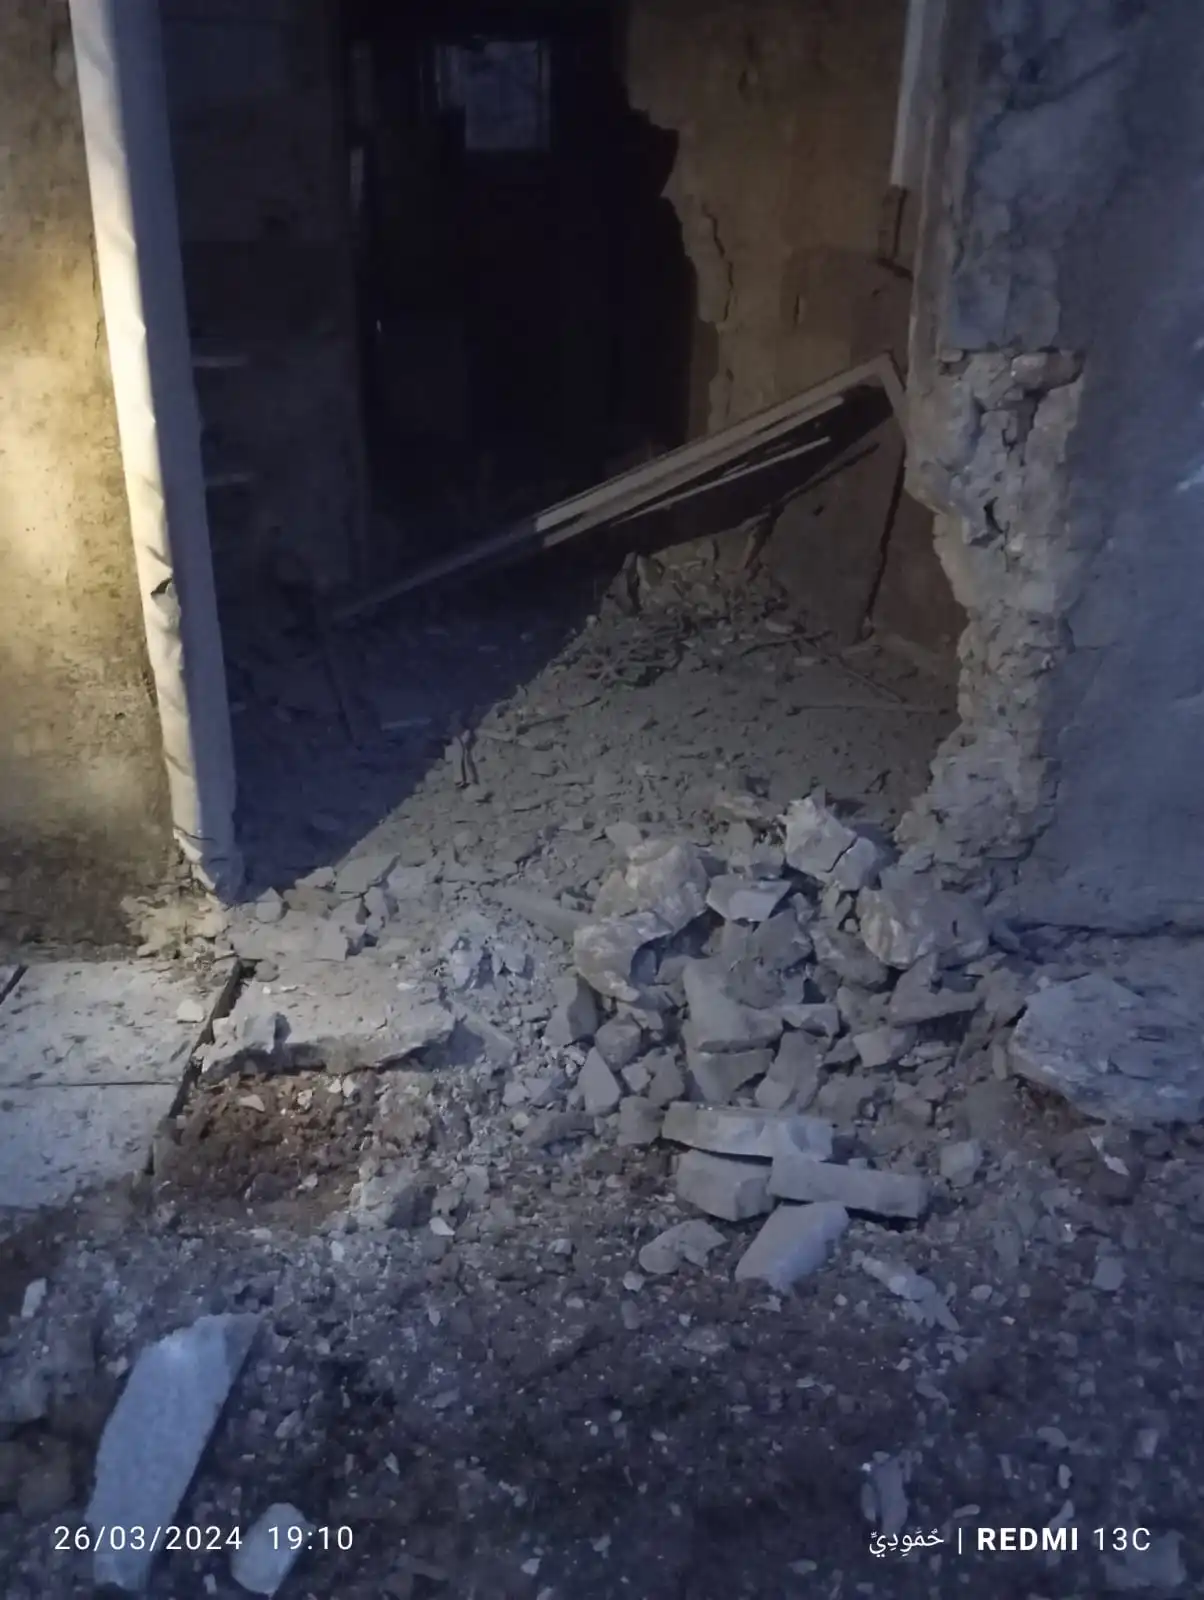 Syrian regime forces bomb Othman bin Affan Mosque in S. Idlib, March 26, 2024